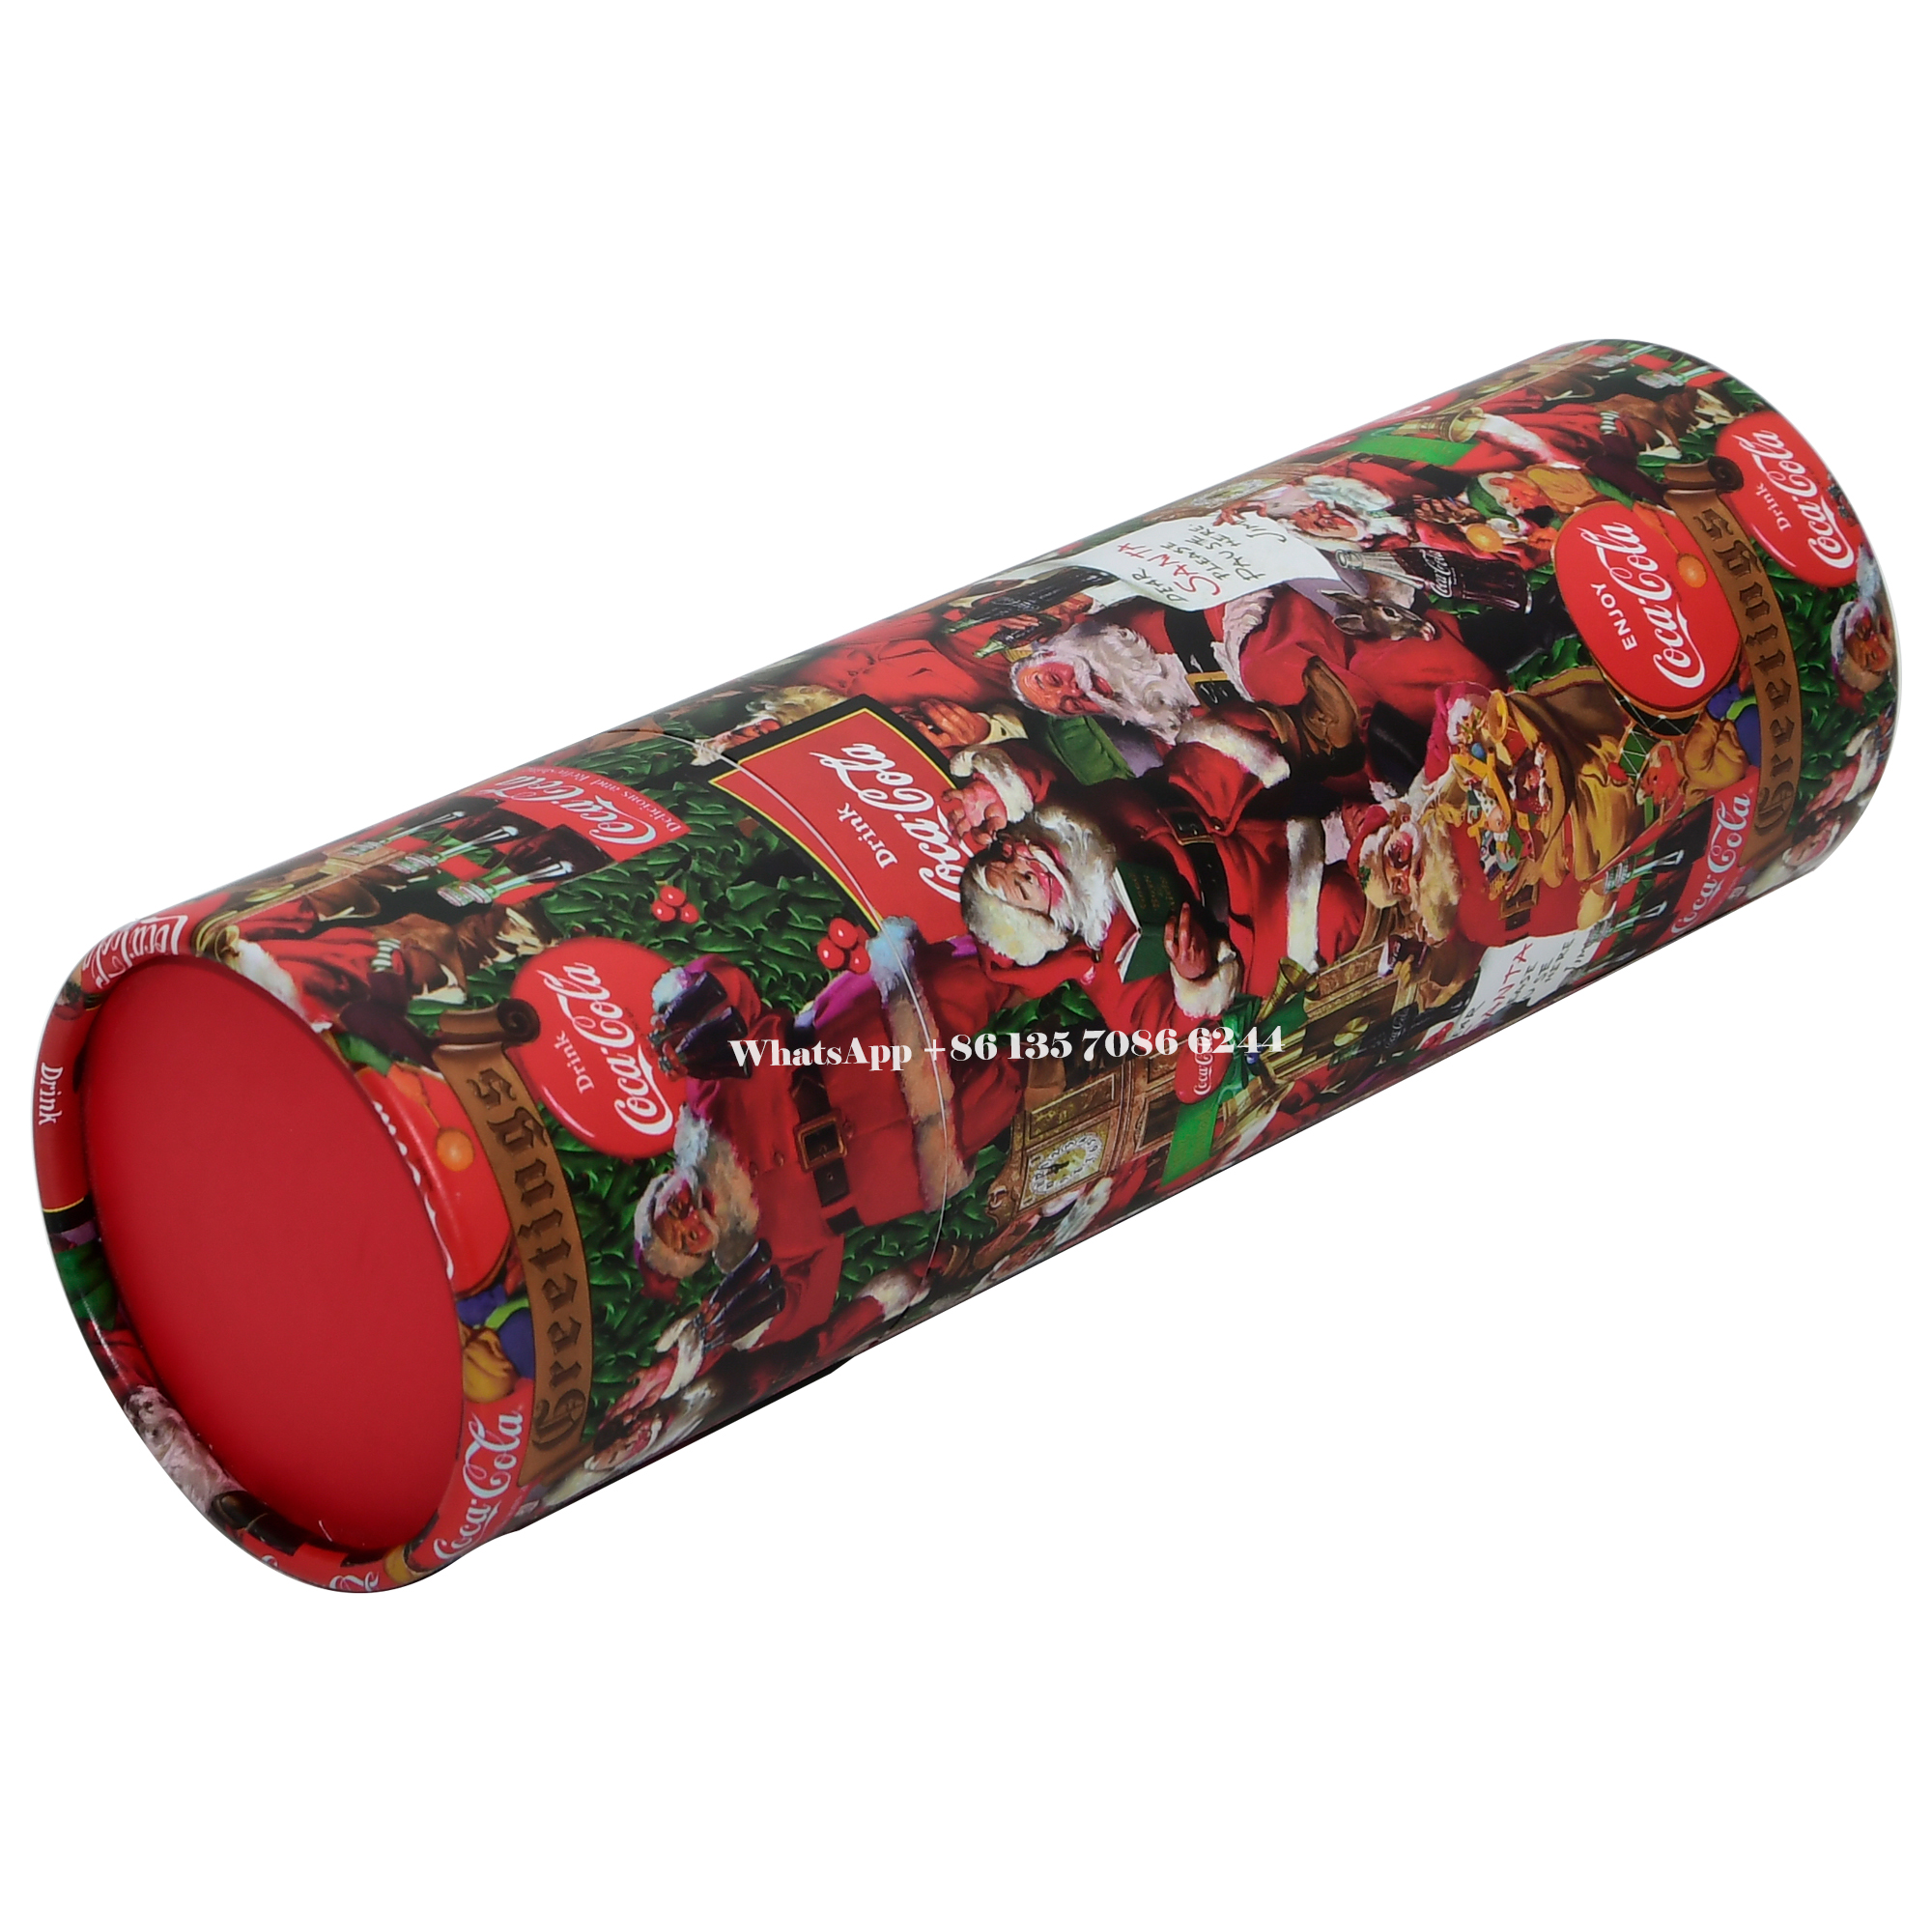 Festliche Weihnachtsedition Coca-Cola Papiertubenverpackung  